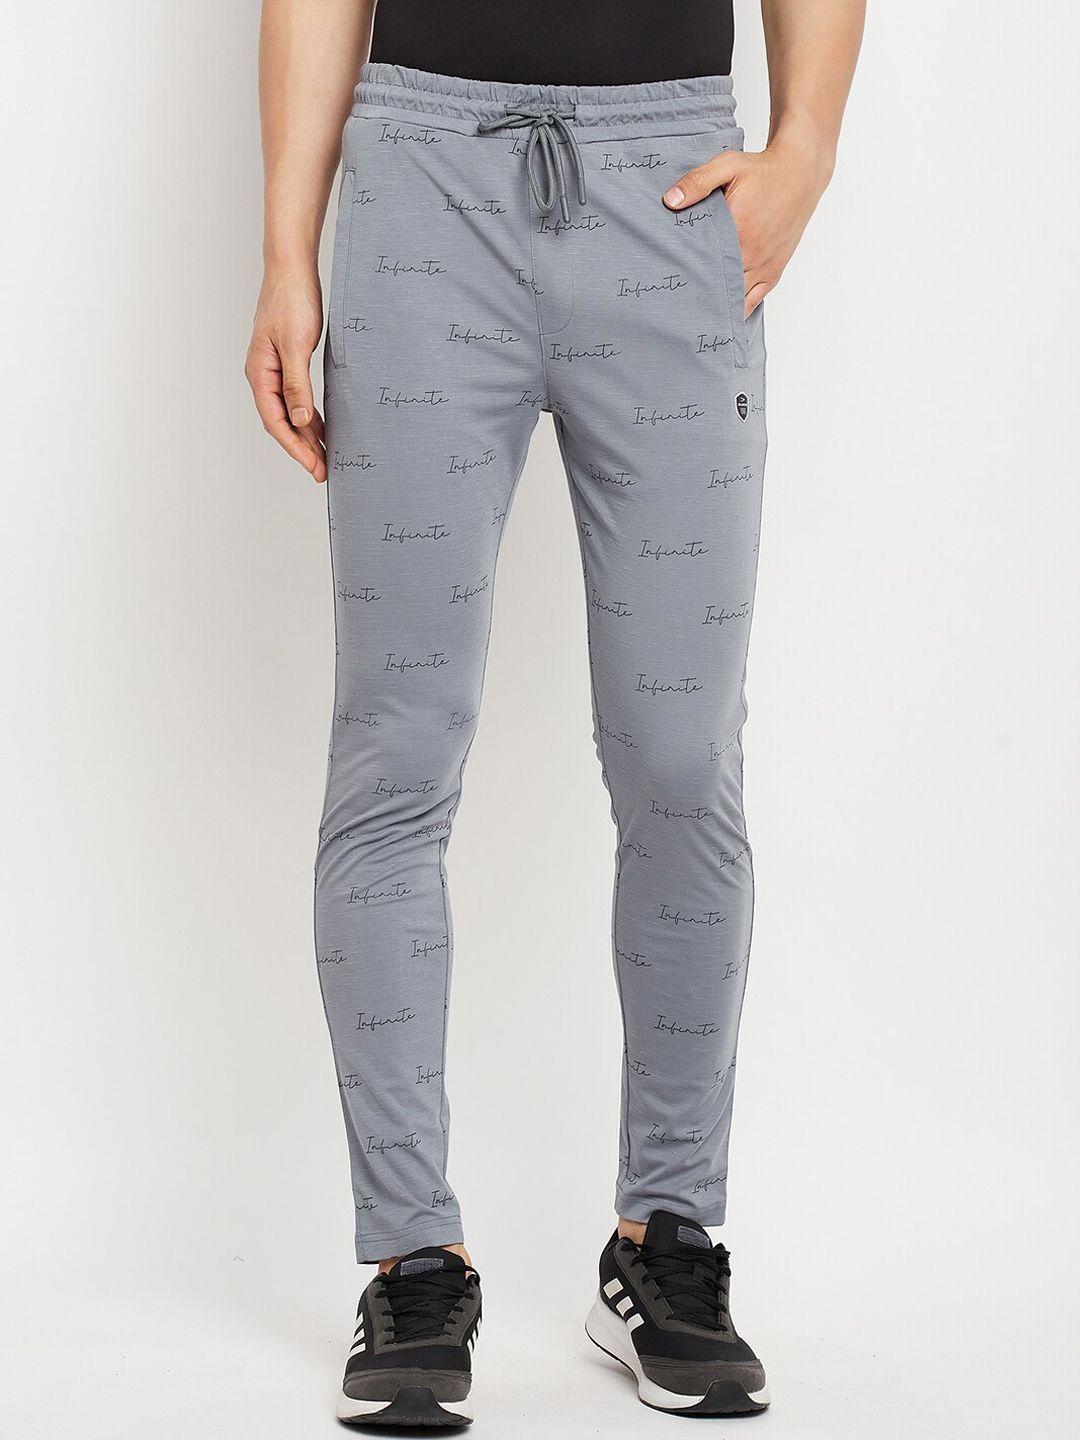 duke-men-printed-cotton-track-pants